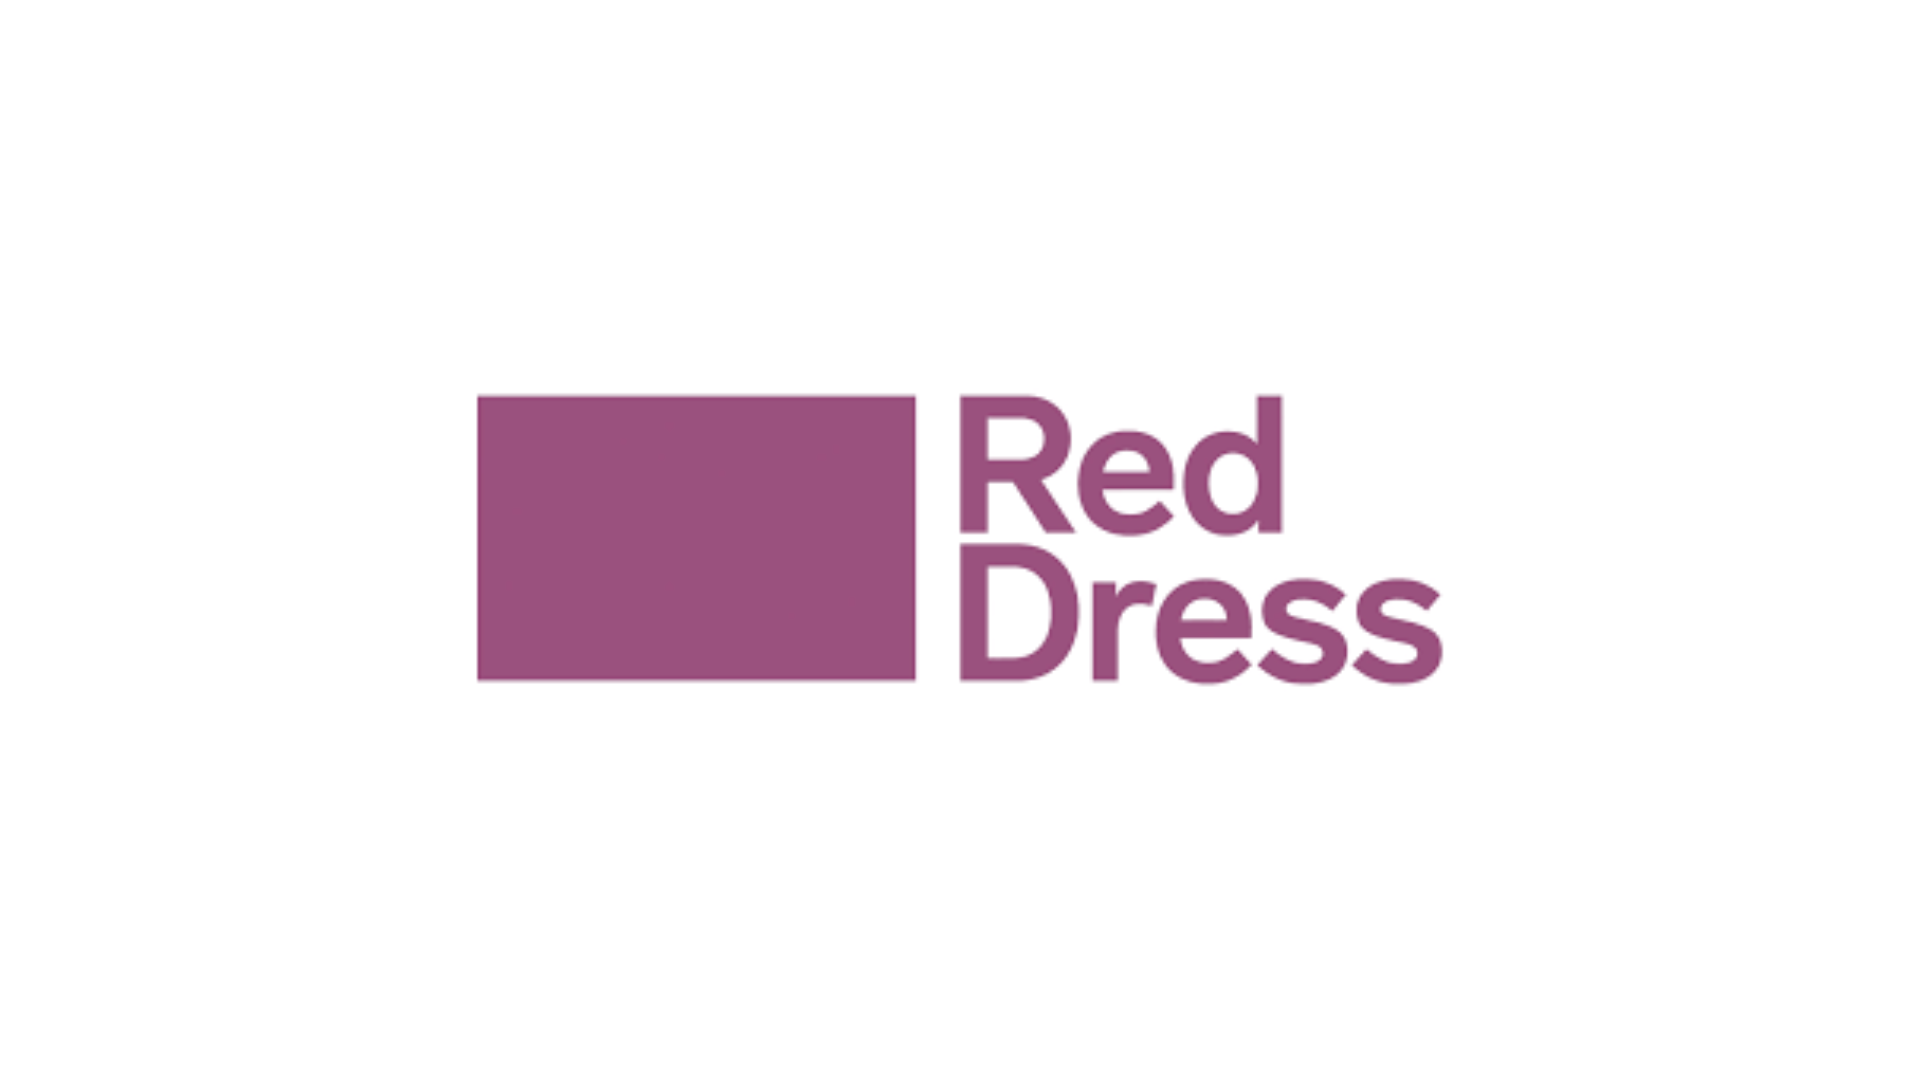 RedDress Medical